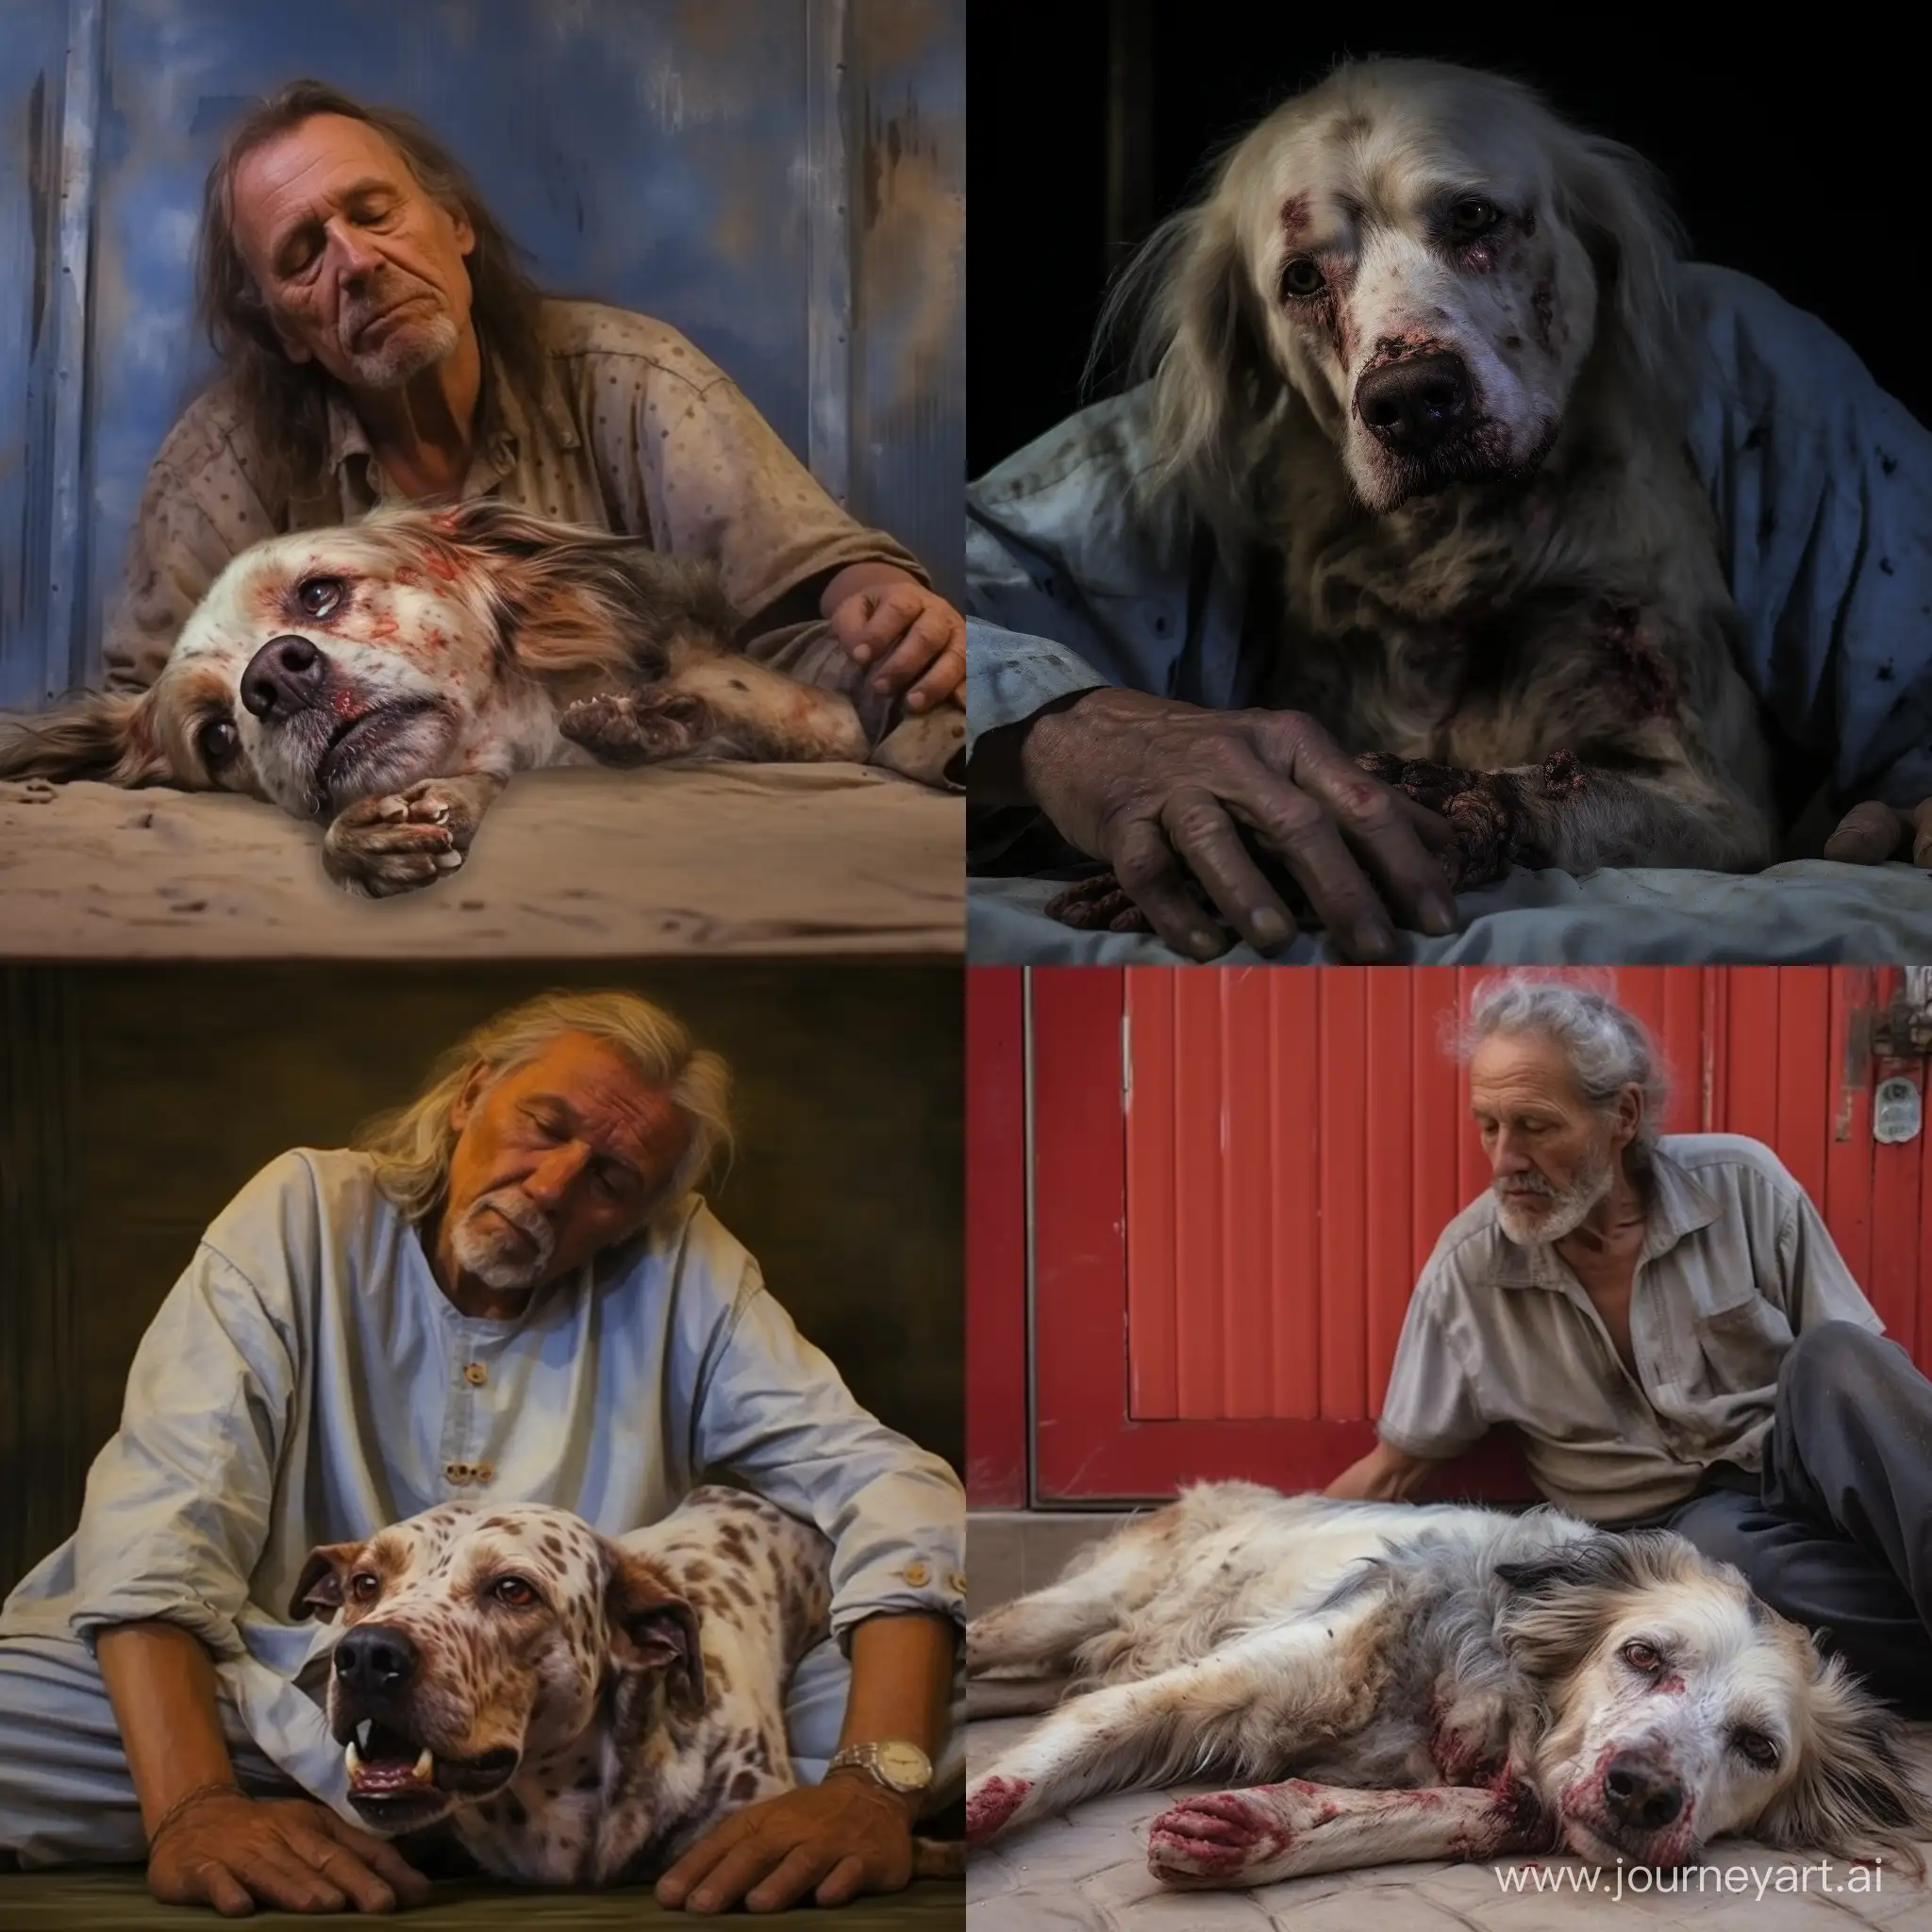 Бело-пятнистый беспородный пёс лежит у ног хозяина -мужчины и умирает, хозяин гладит умирающего пса и плачет, фотография, гиперреализм, высокое разрешение